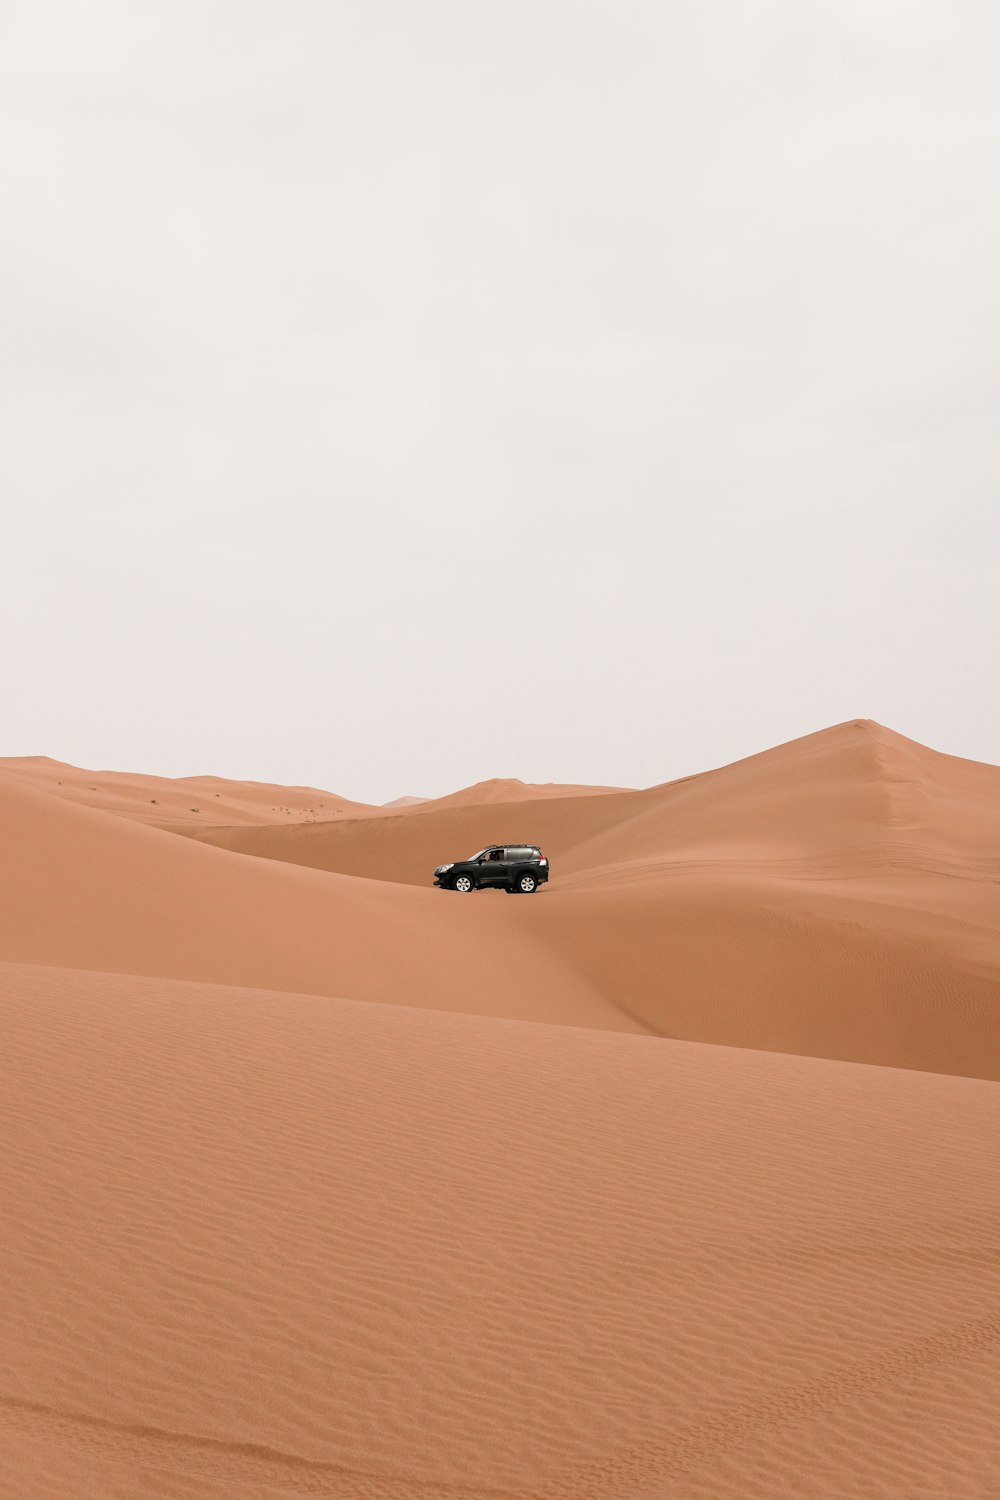 한낮에 사막을 달리는 자동차